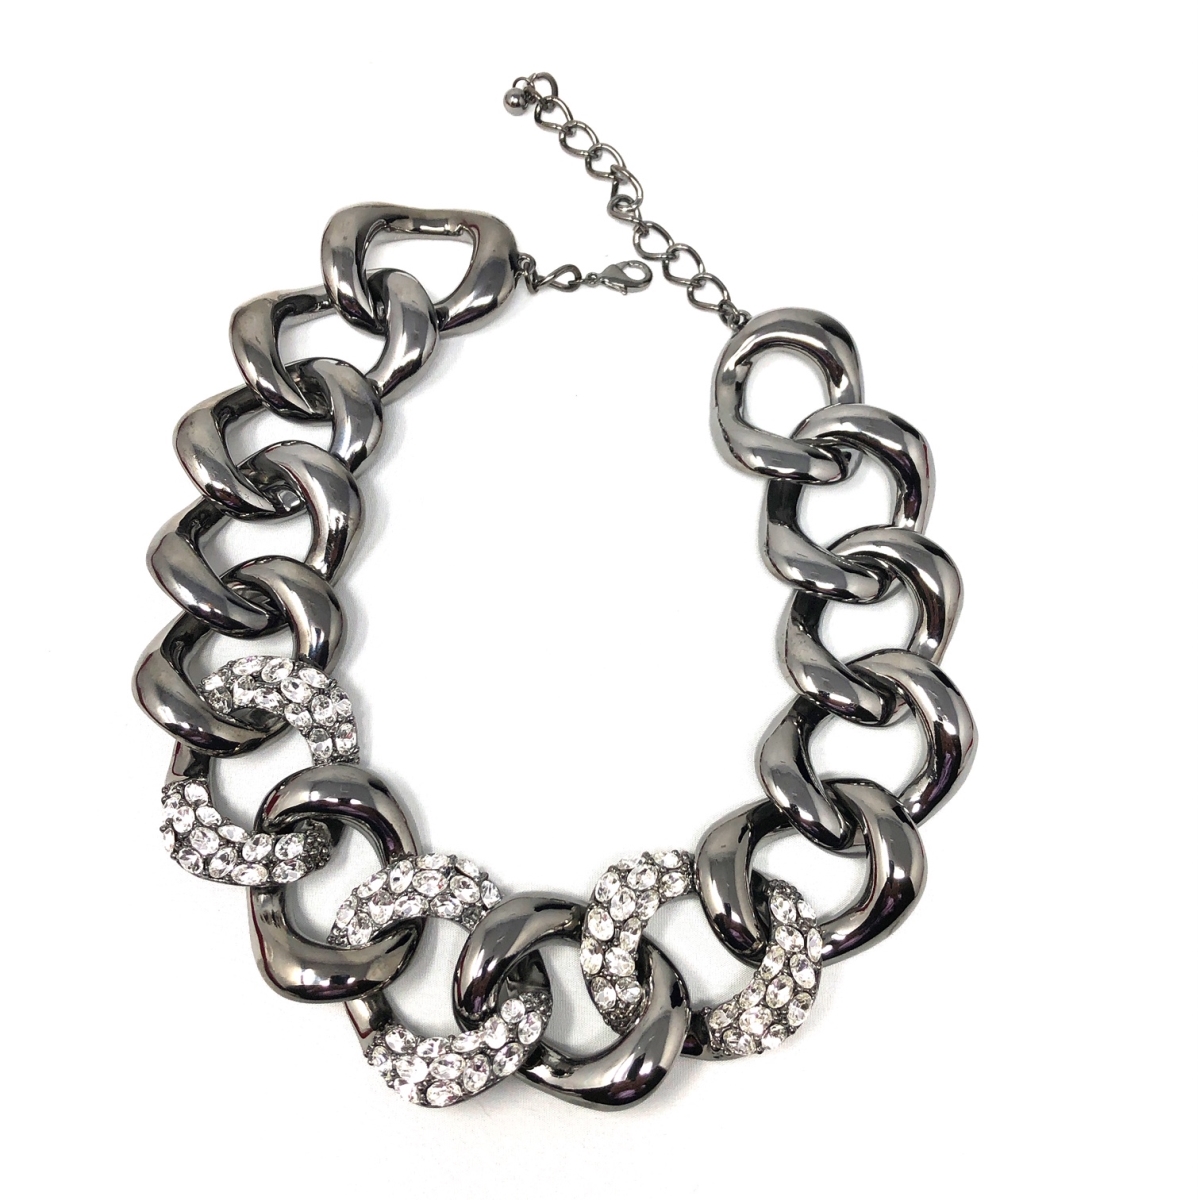 Q3591ok-clear-hem Fashion Necklace - Clear